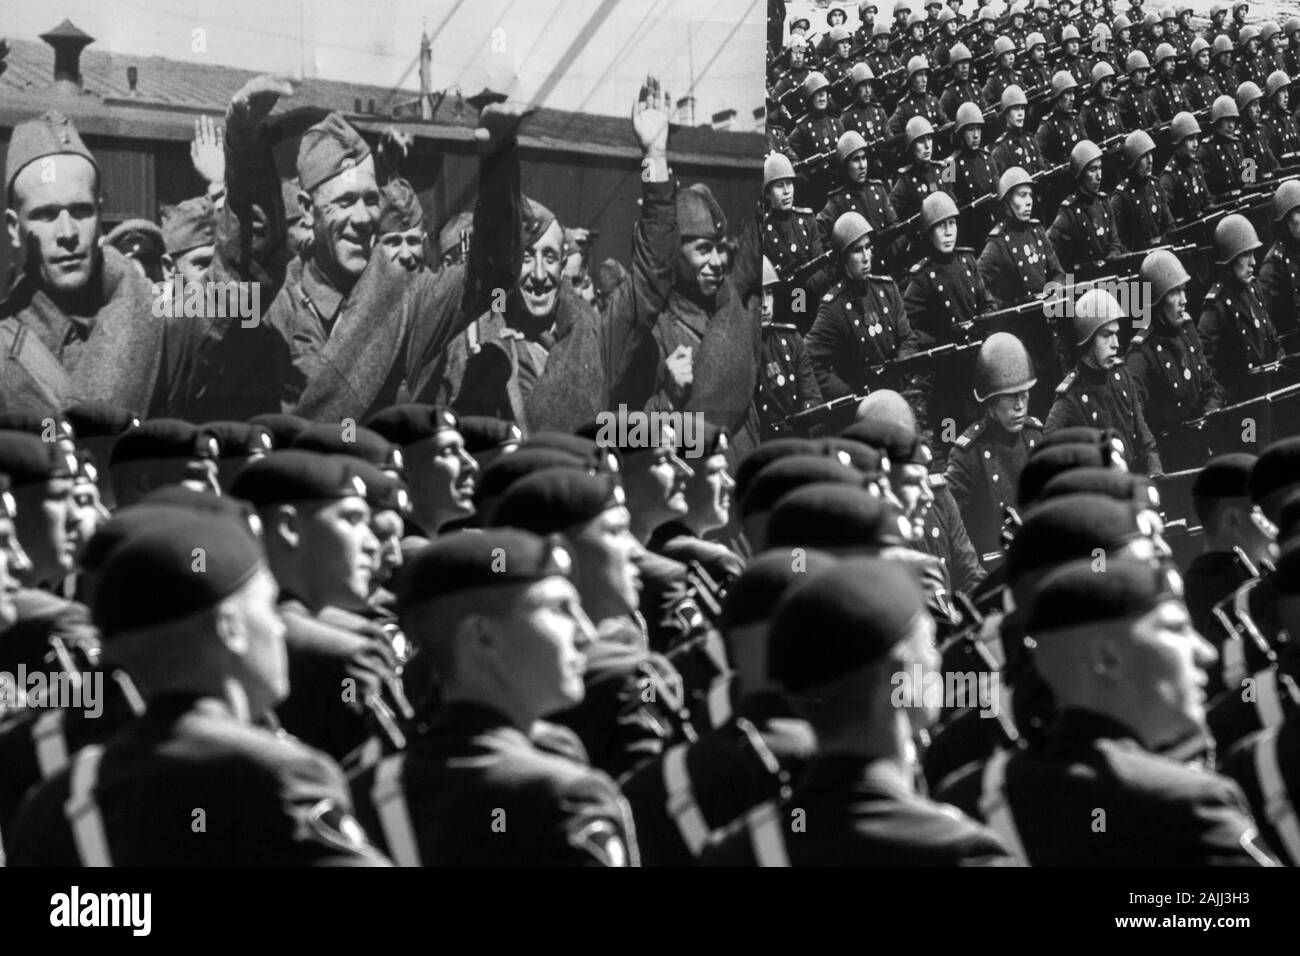 Moskau, Russland. 7. Mai, 2015 Soldaten der russischen Armee März auf dem Hintergrund einer Banner mit historischen Fotos des Großen Vaterländischen Krieges während ein Tag des Sieges Militärparade anlässlich des 70. Jahrestages des Sieges über Nazi-Deutschland im Großen Vaterländischen Krieg von 1941-1945 Stockfoto